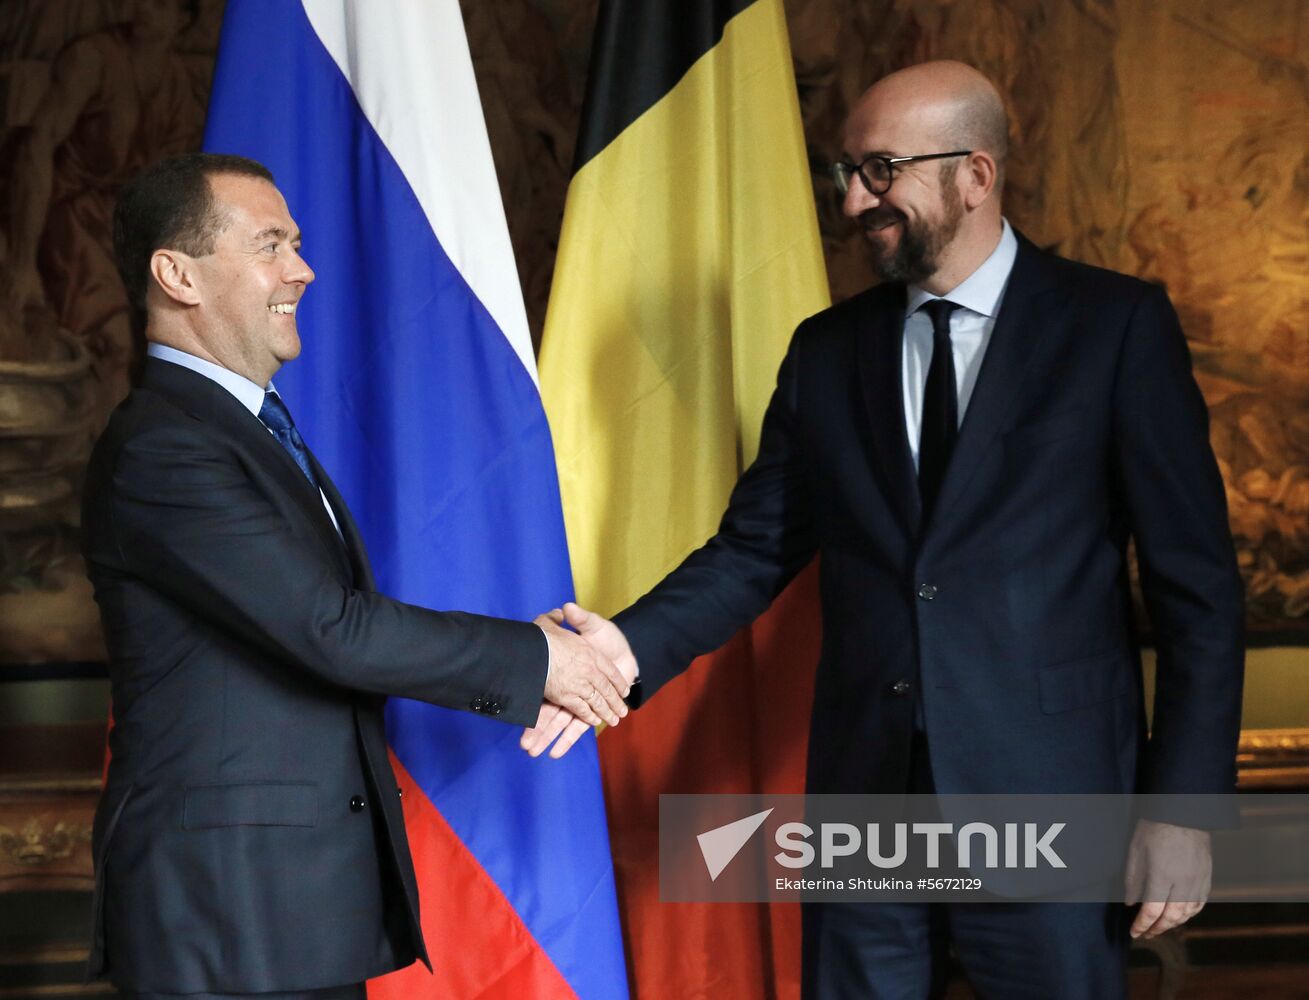 Russian Prime Minister Dmitry Medvedev visits Belgium